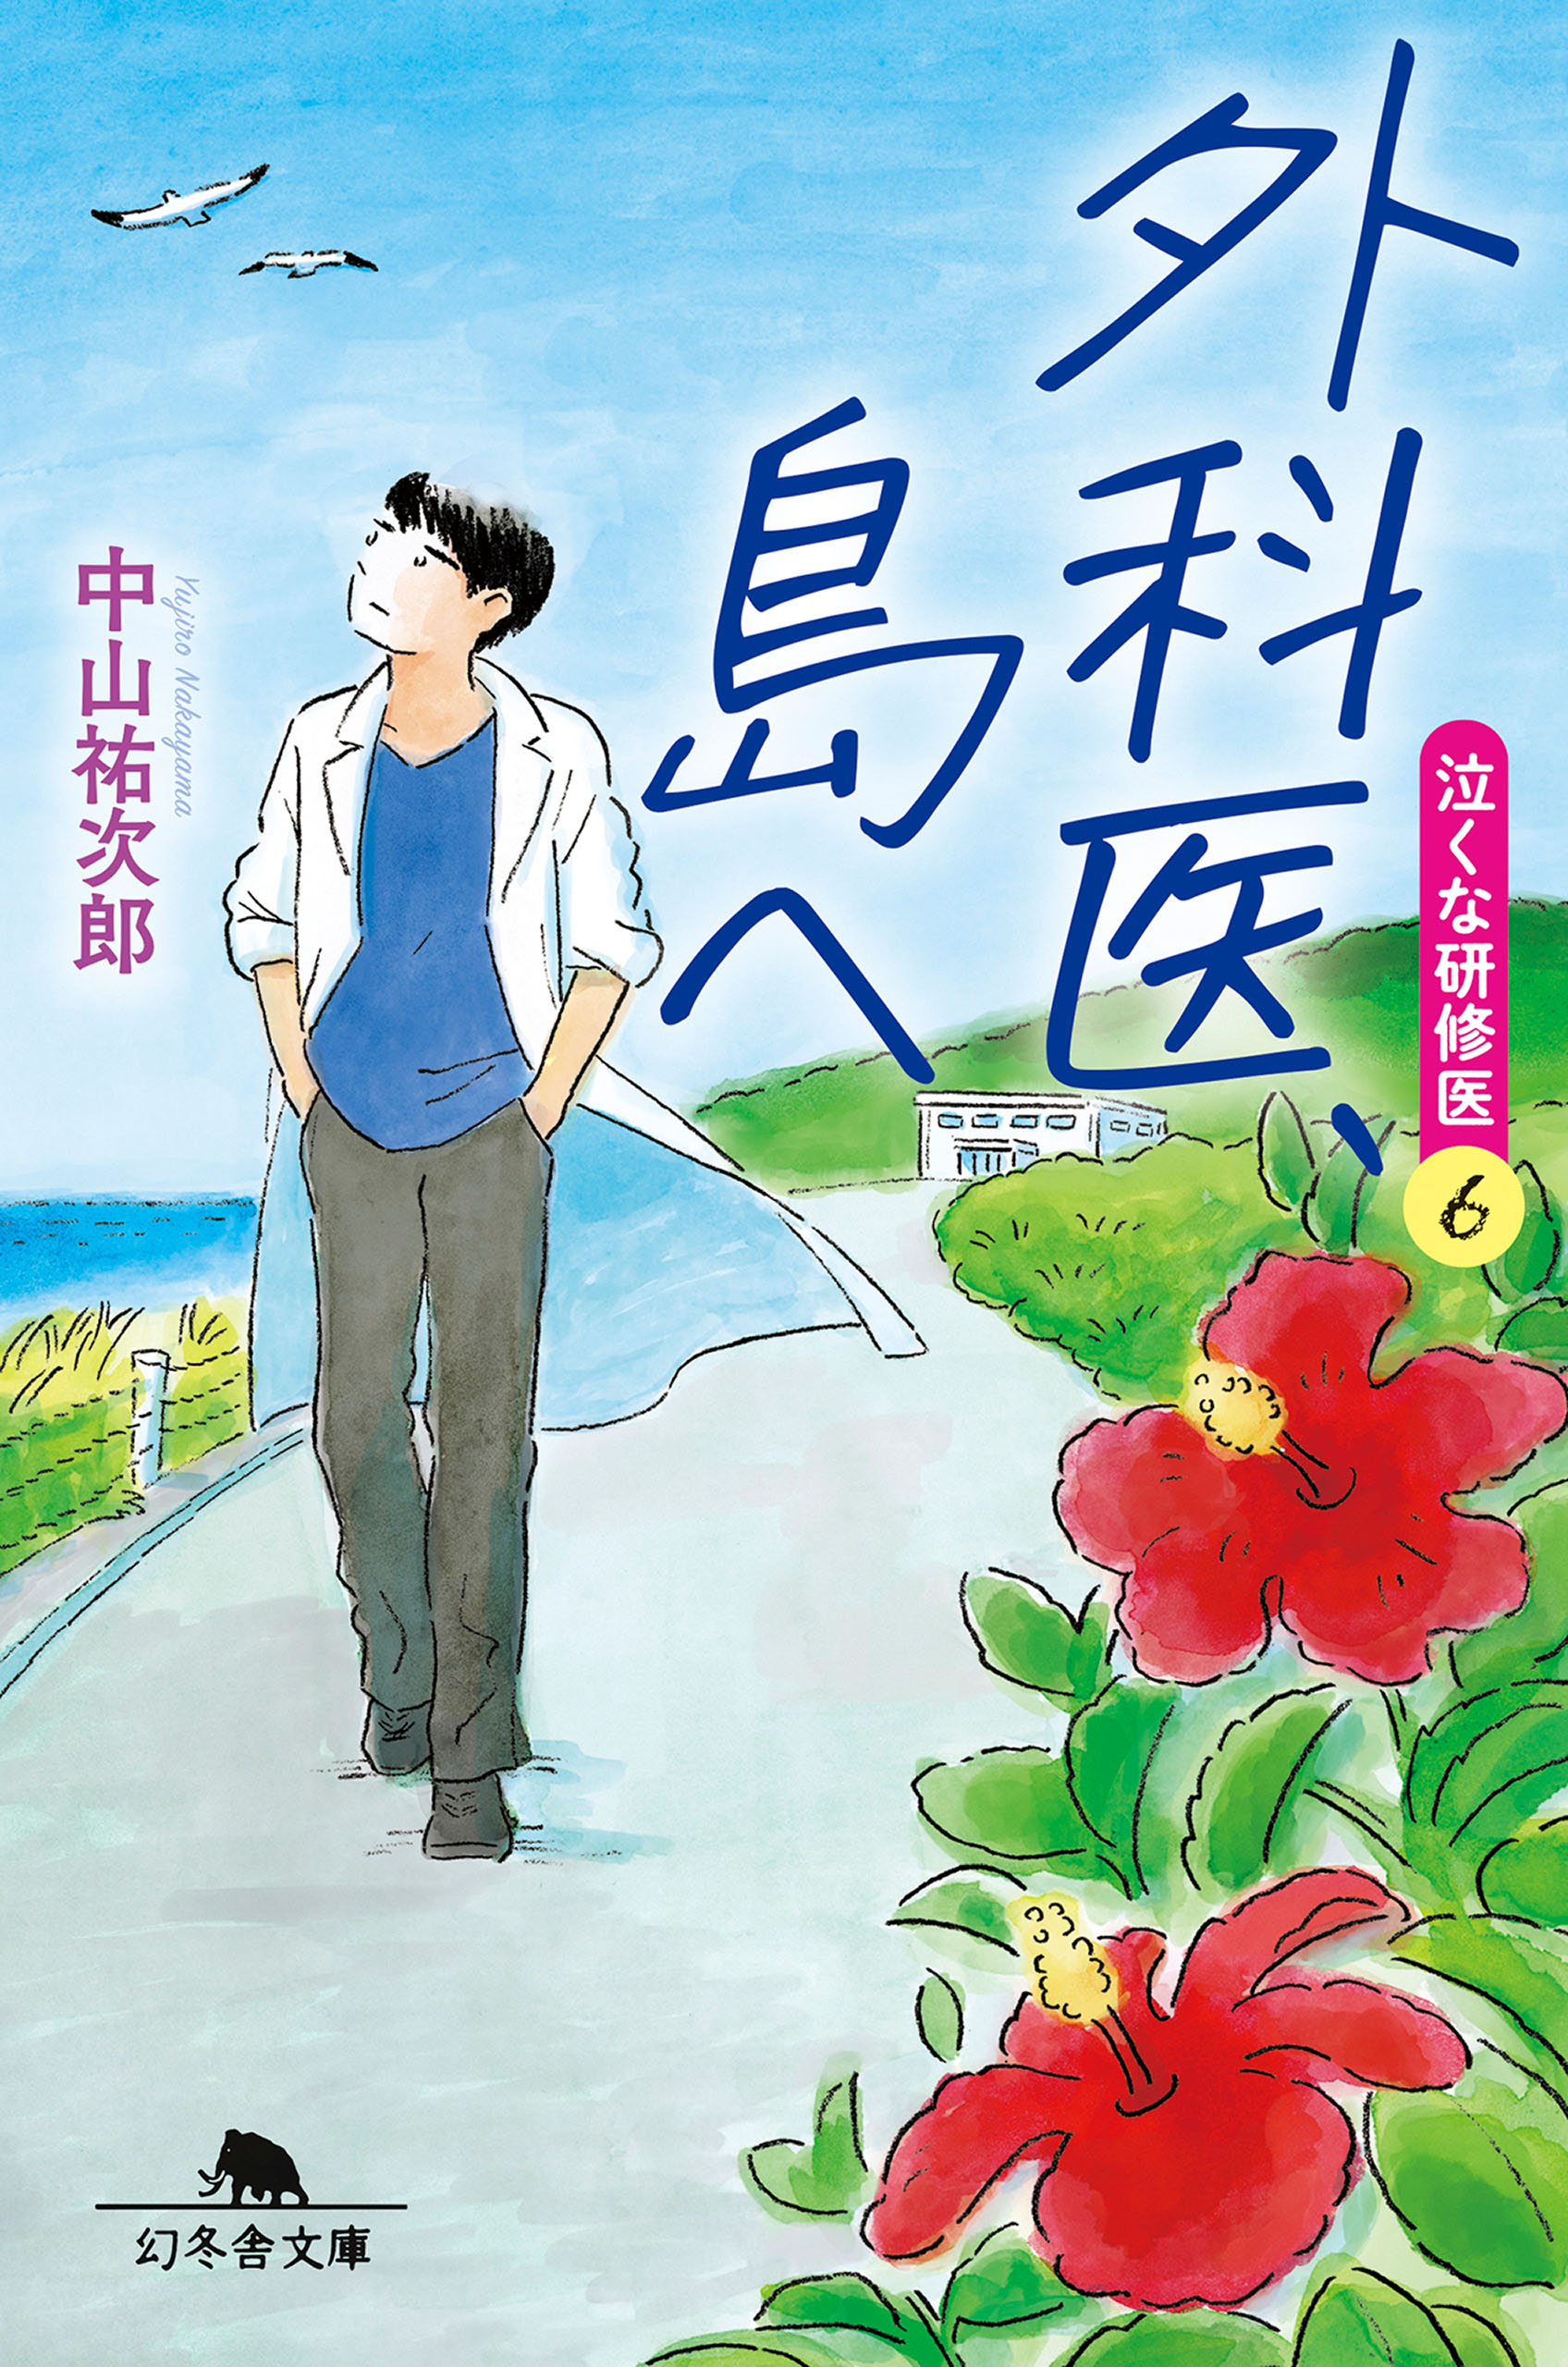 やめるな外科医 泣くな研修医4 - 文学・小説